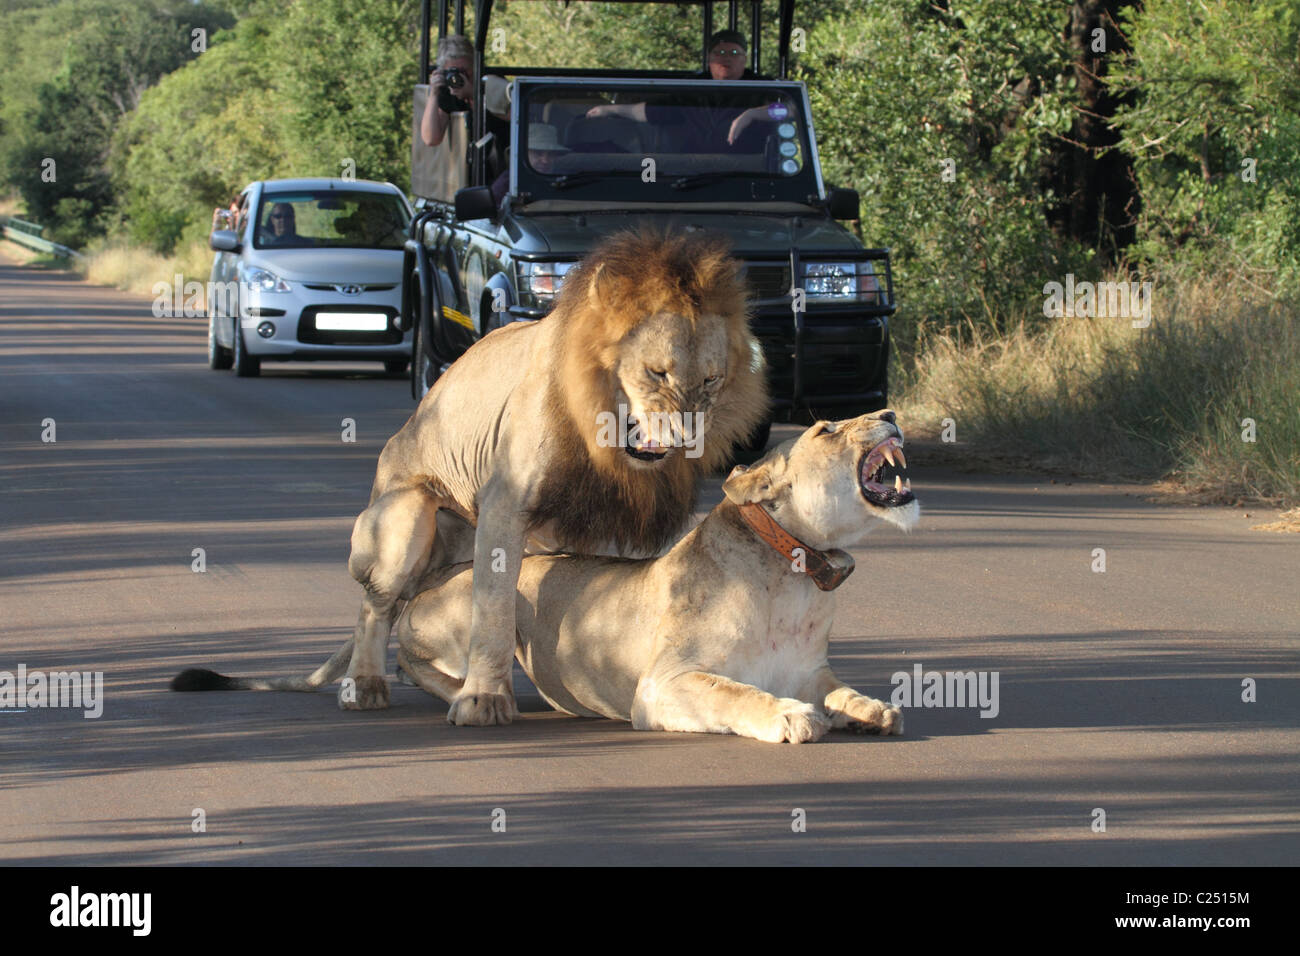 Lion, femme head shot accouplement mâle et femelle à l'avant du véhicule safari roaring Banque D'Images